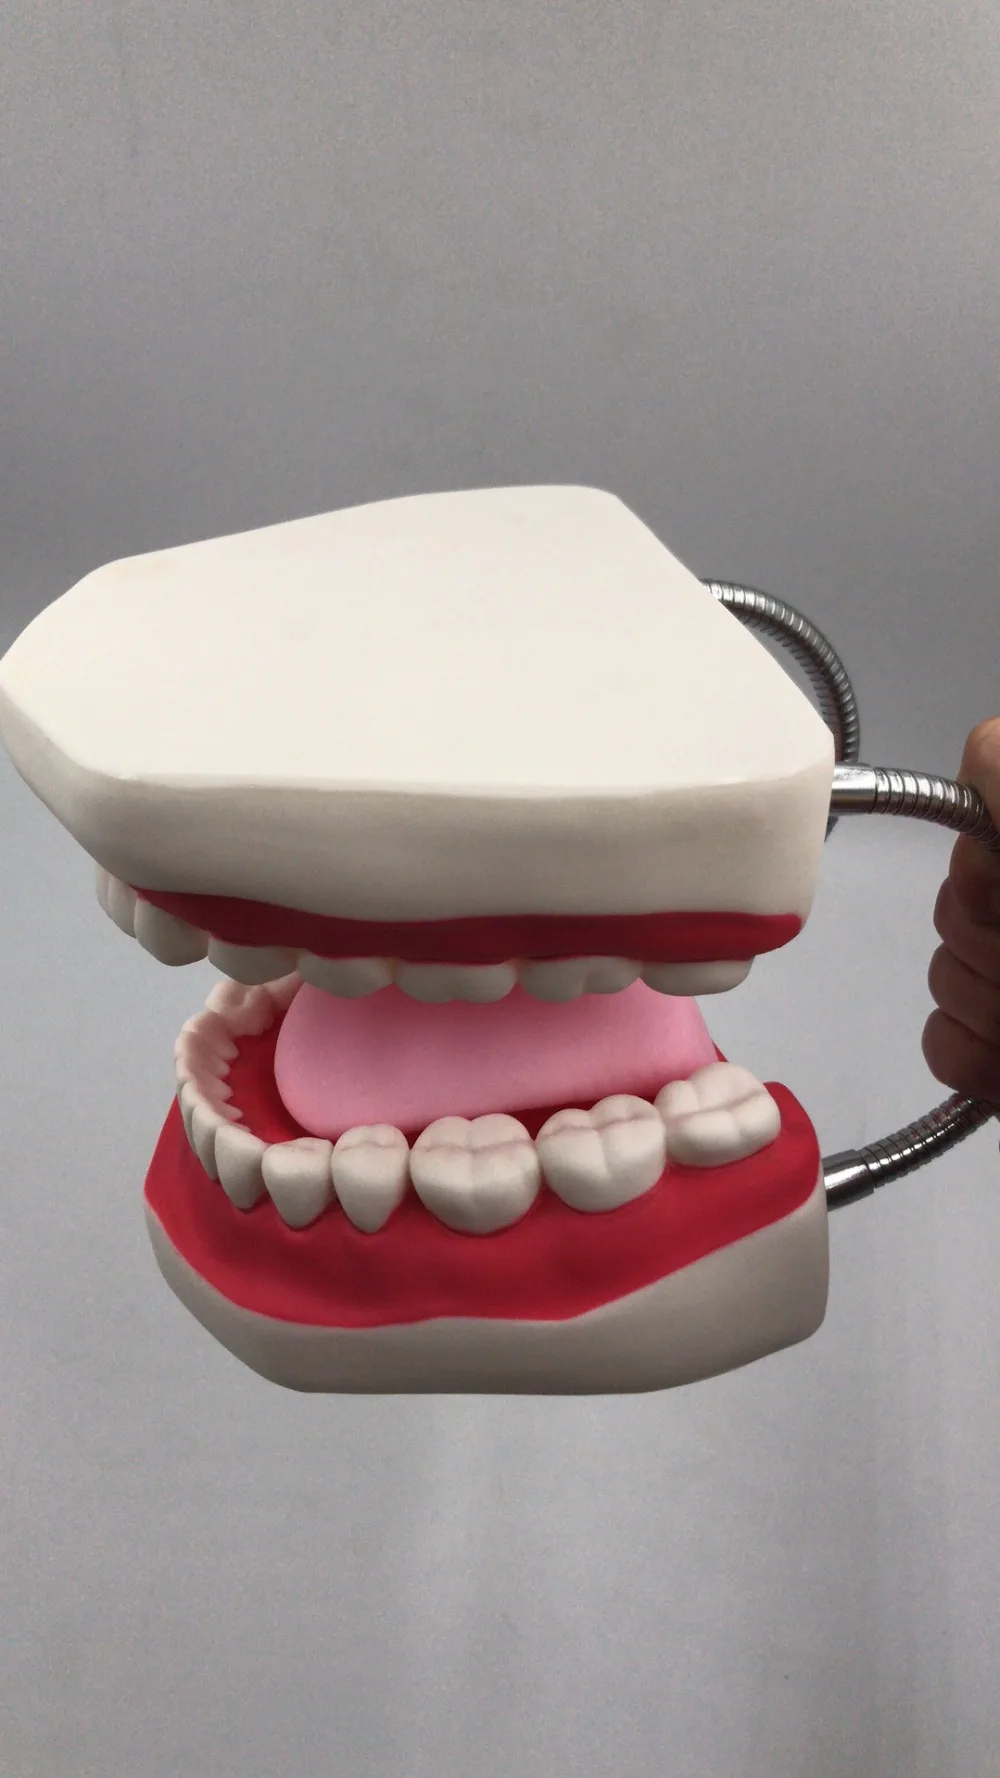 6 раз Стоматологическая модель зубов для взрослых модели зубов для полости рта зуб с язычком для детского сада ребенка раннего обучения, медицинские принадлежности